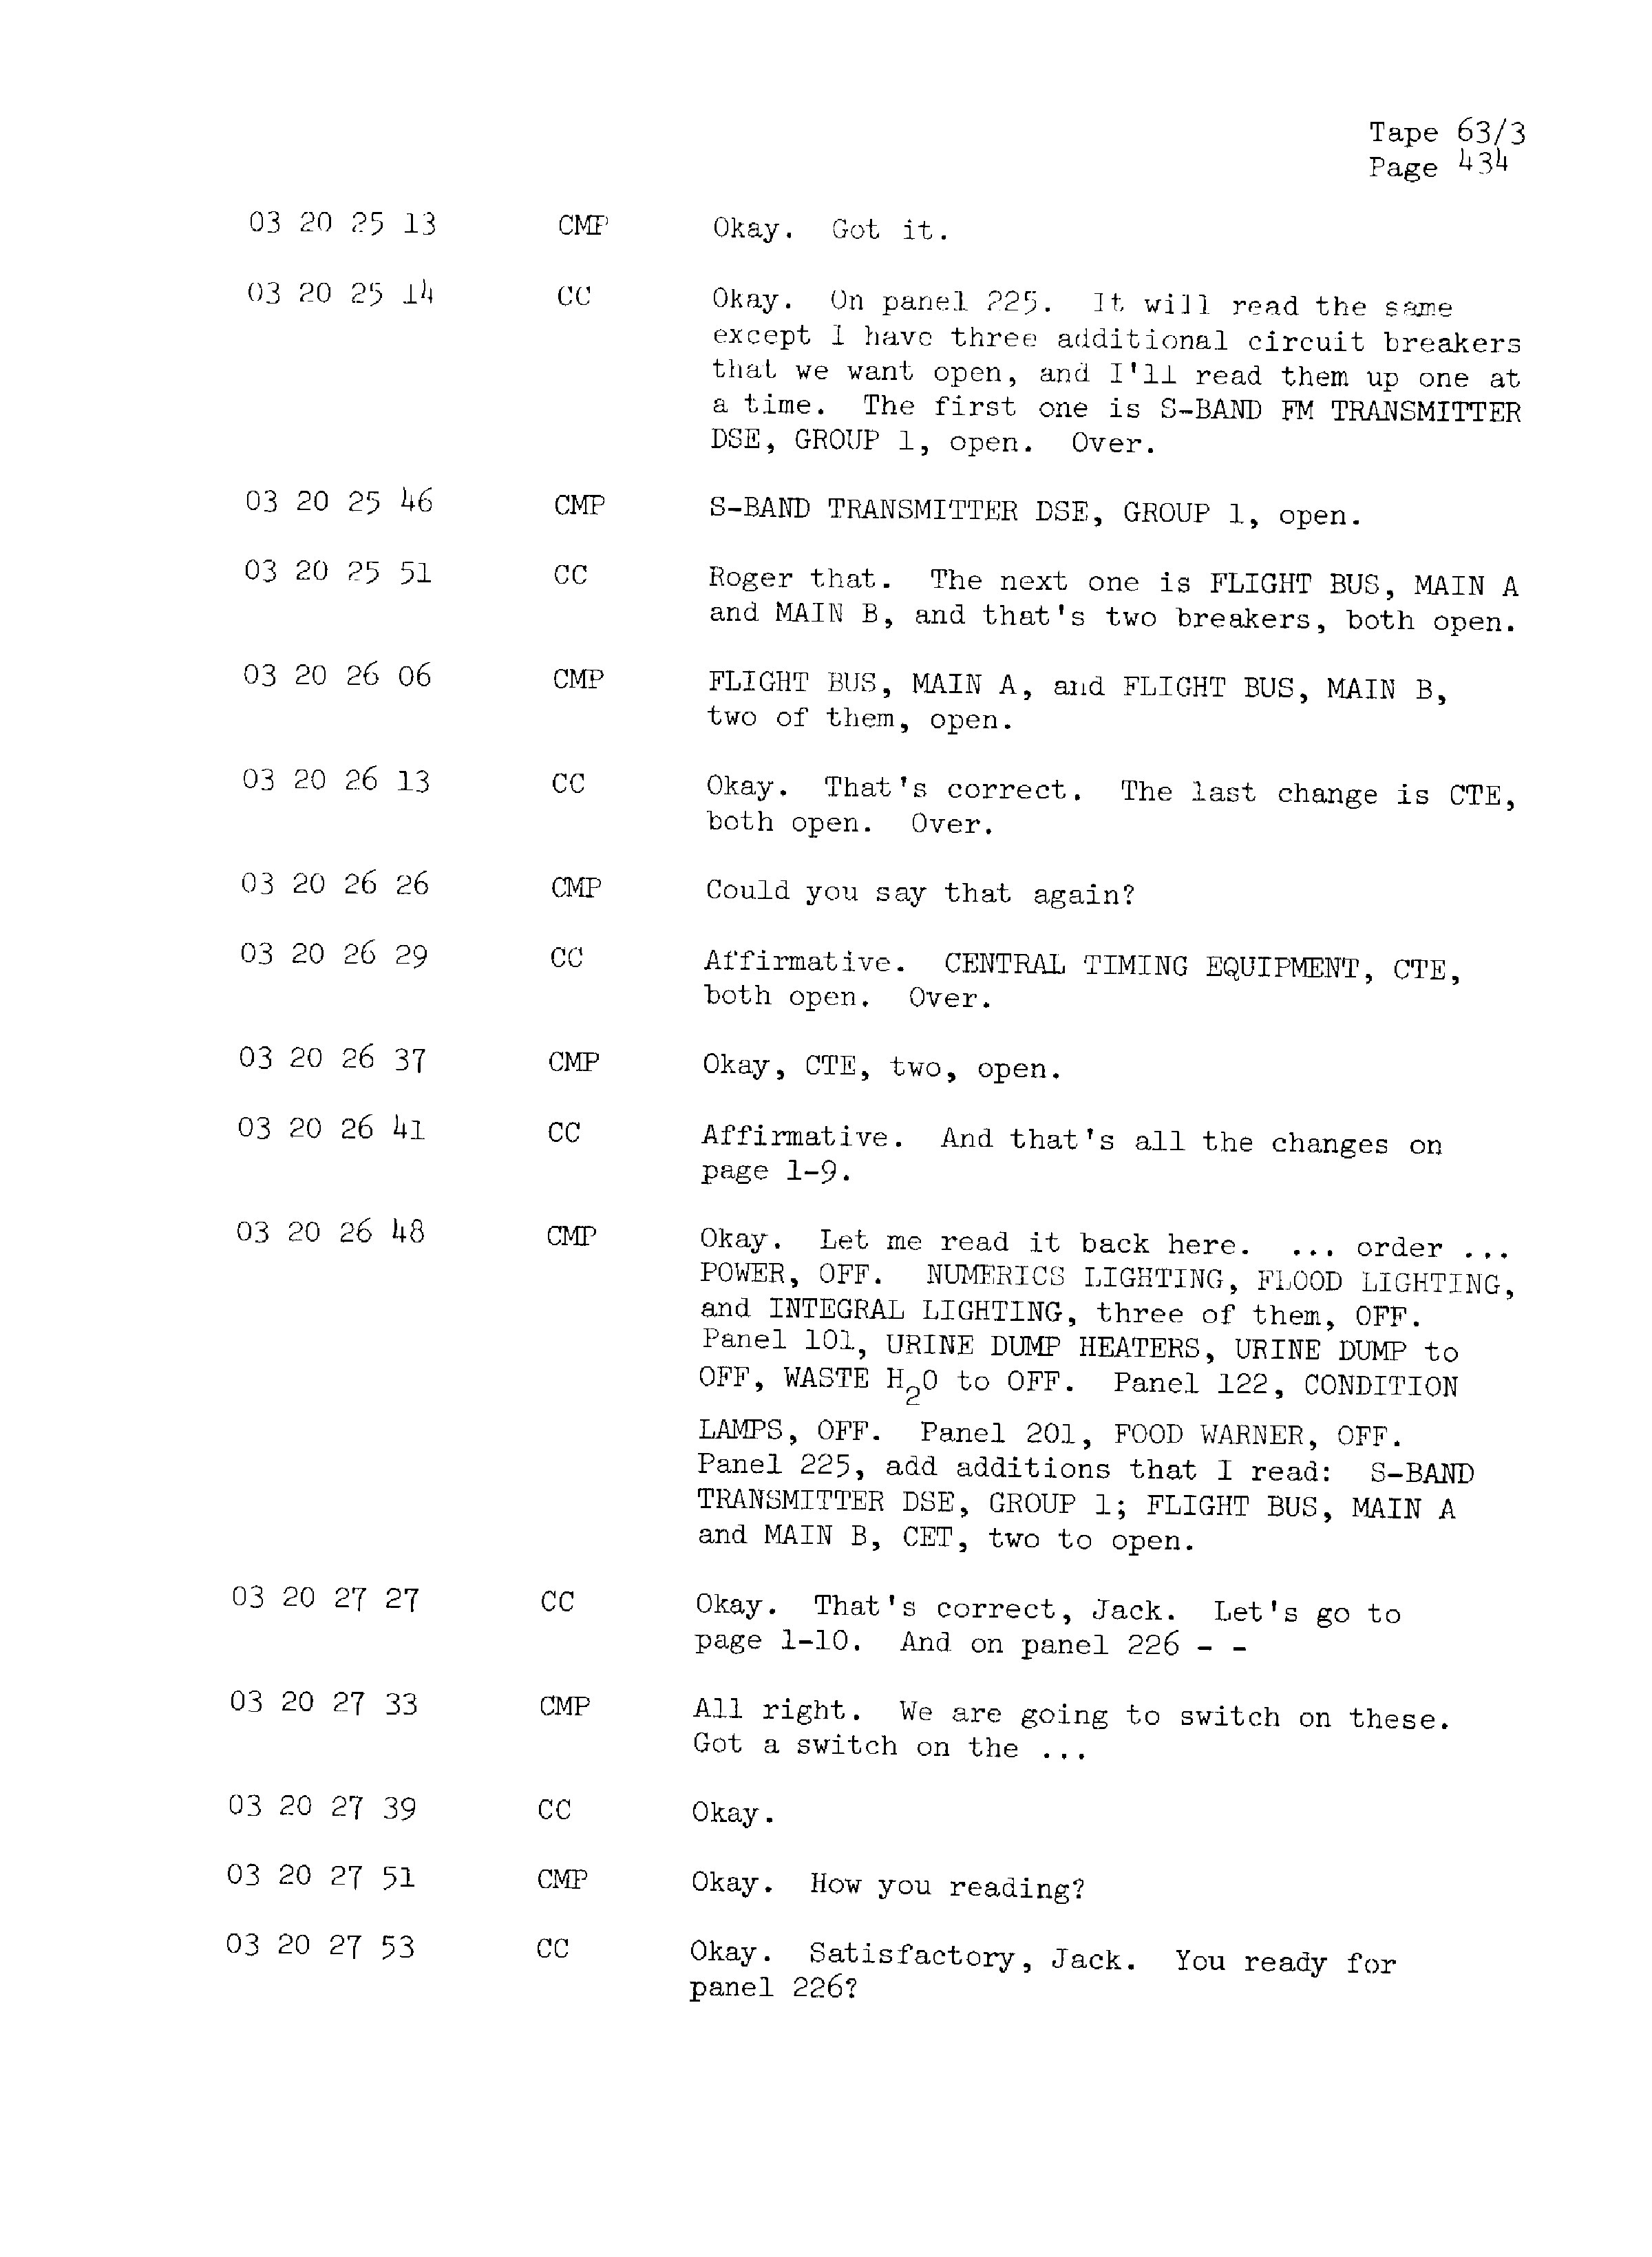 Page 441 of Apollo 13’s original transcript